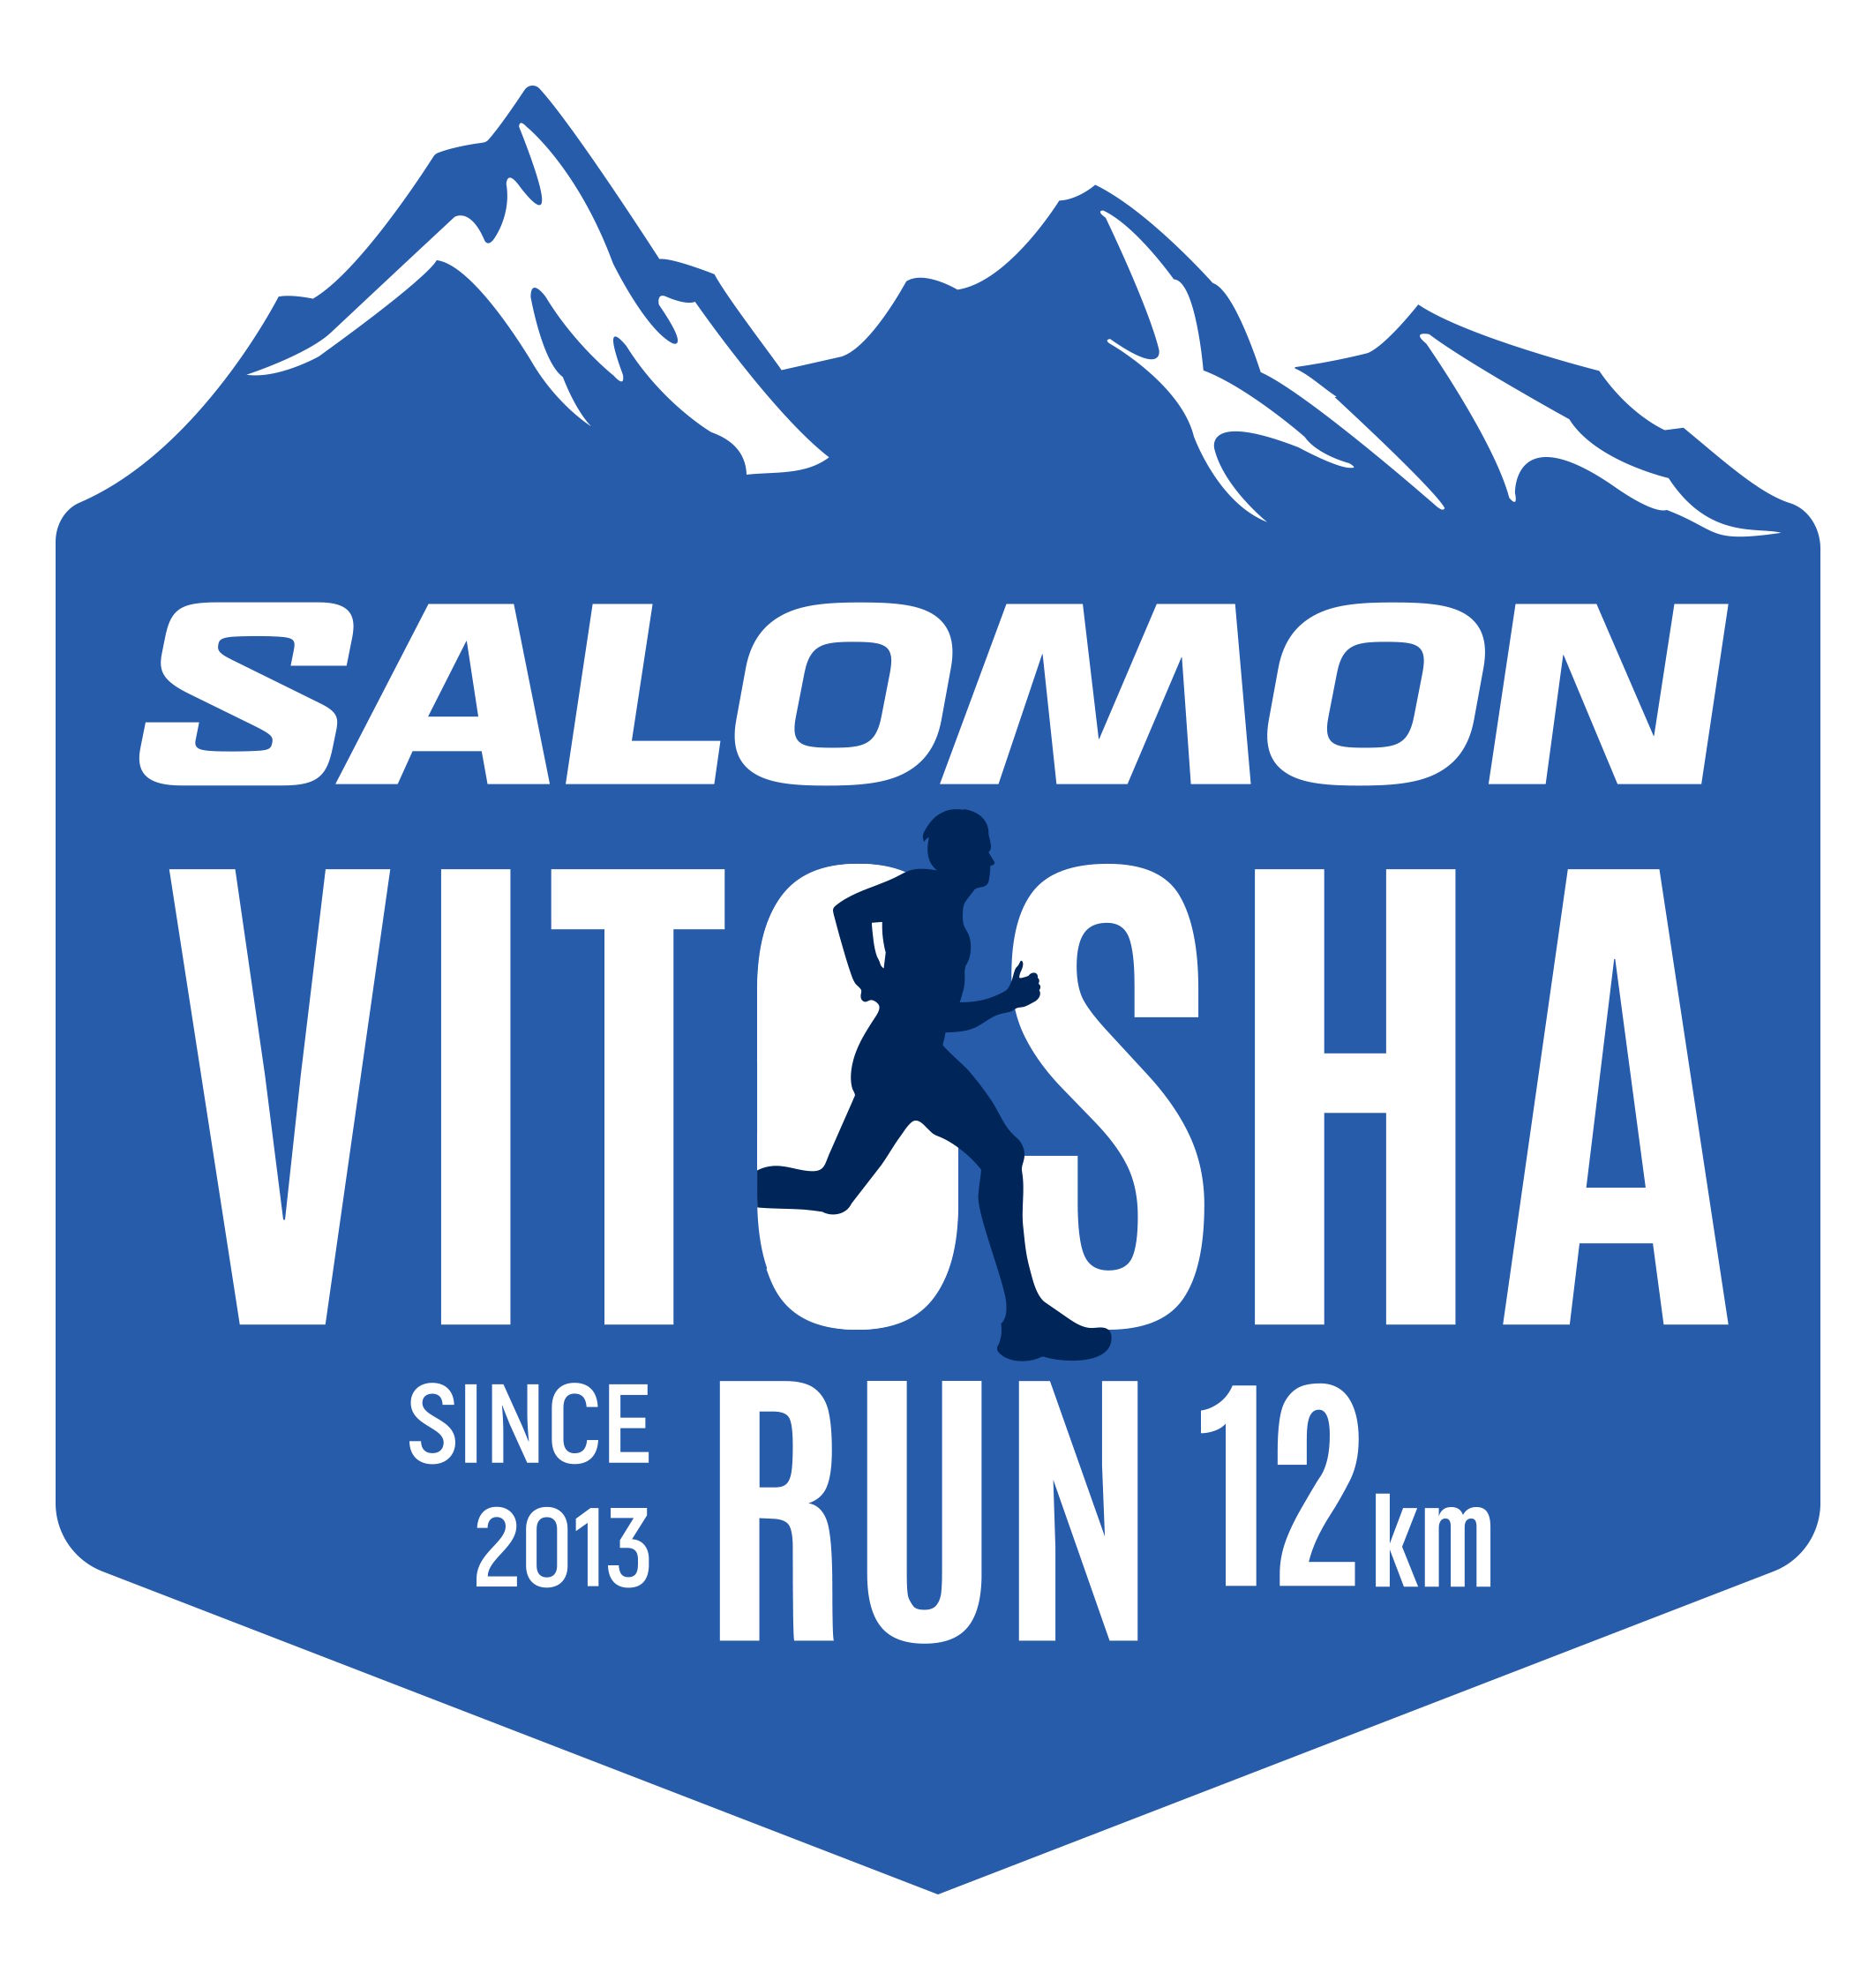 Salomon Vitosha Trail logo 12 km